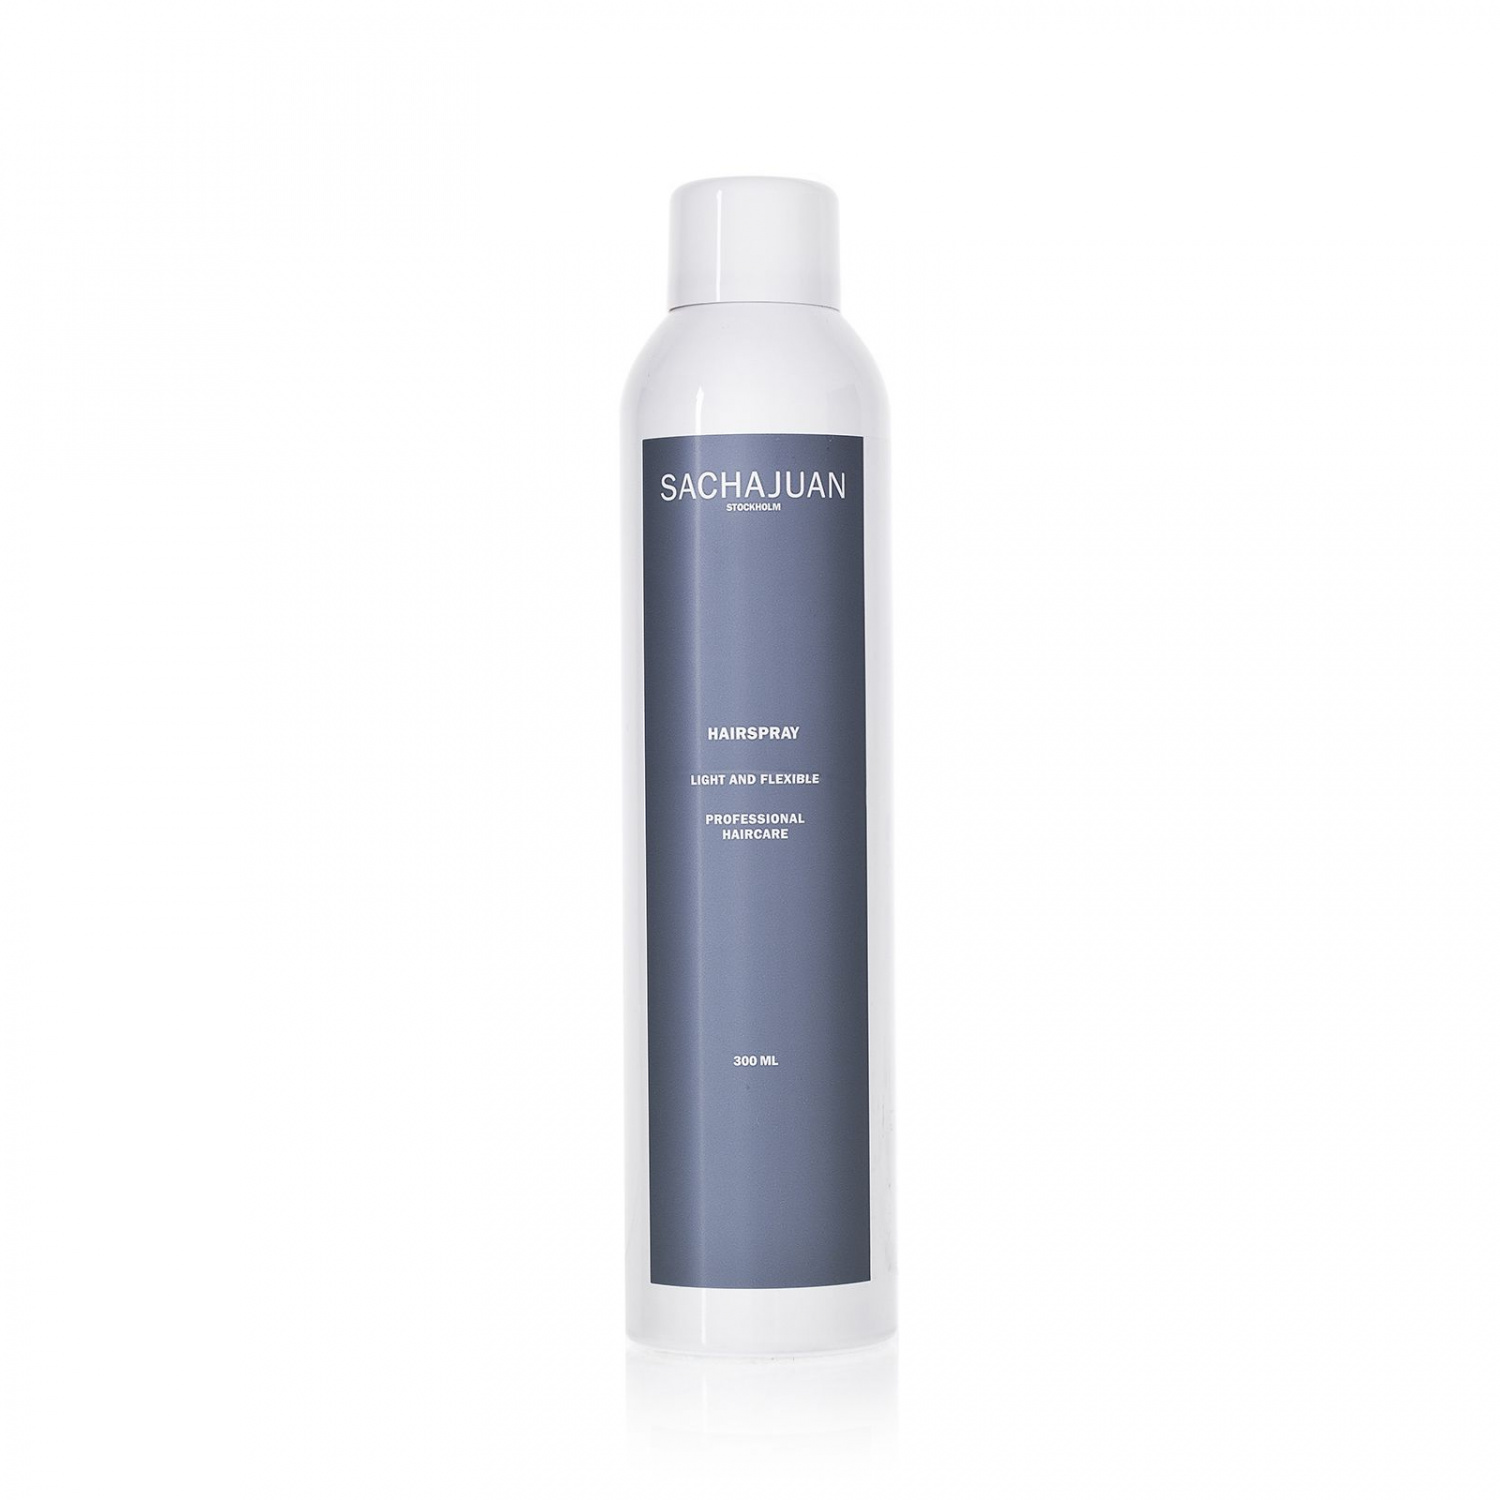 SACHAJUAN hair sprays light and flexible & strong control 300 ml. - интернет-магазин профессиональной косметики Spadream, изображение 30170